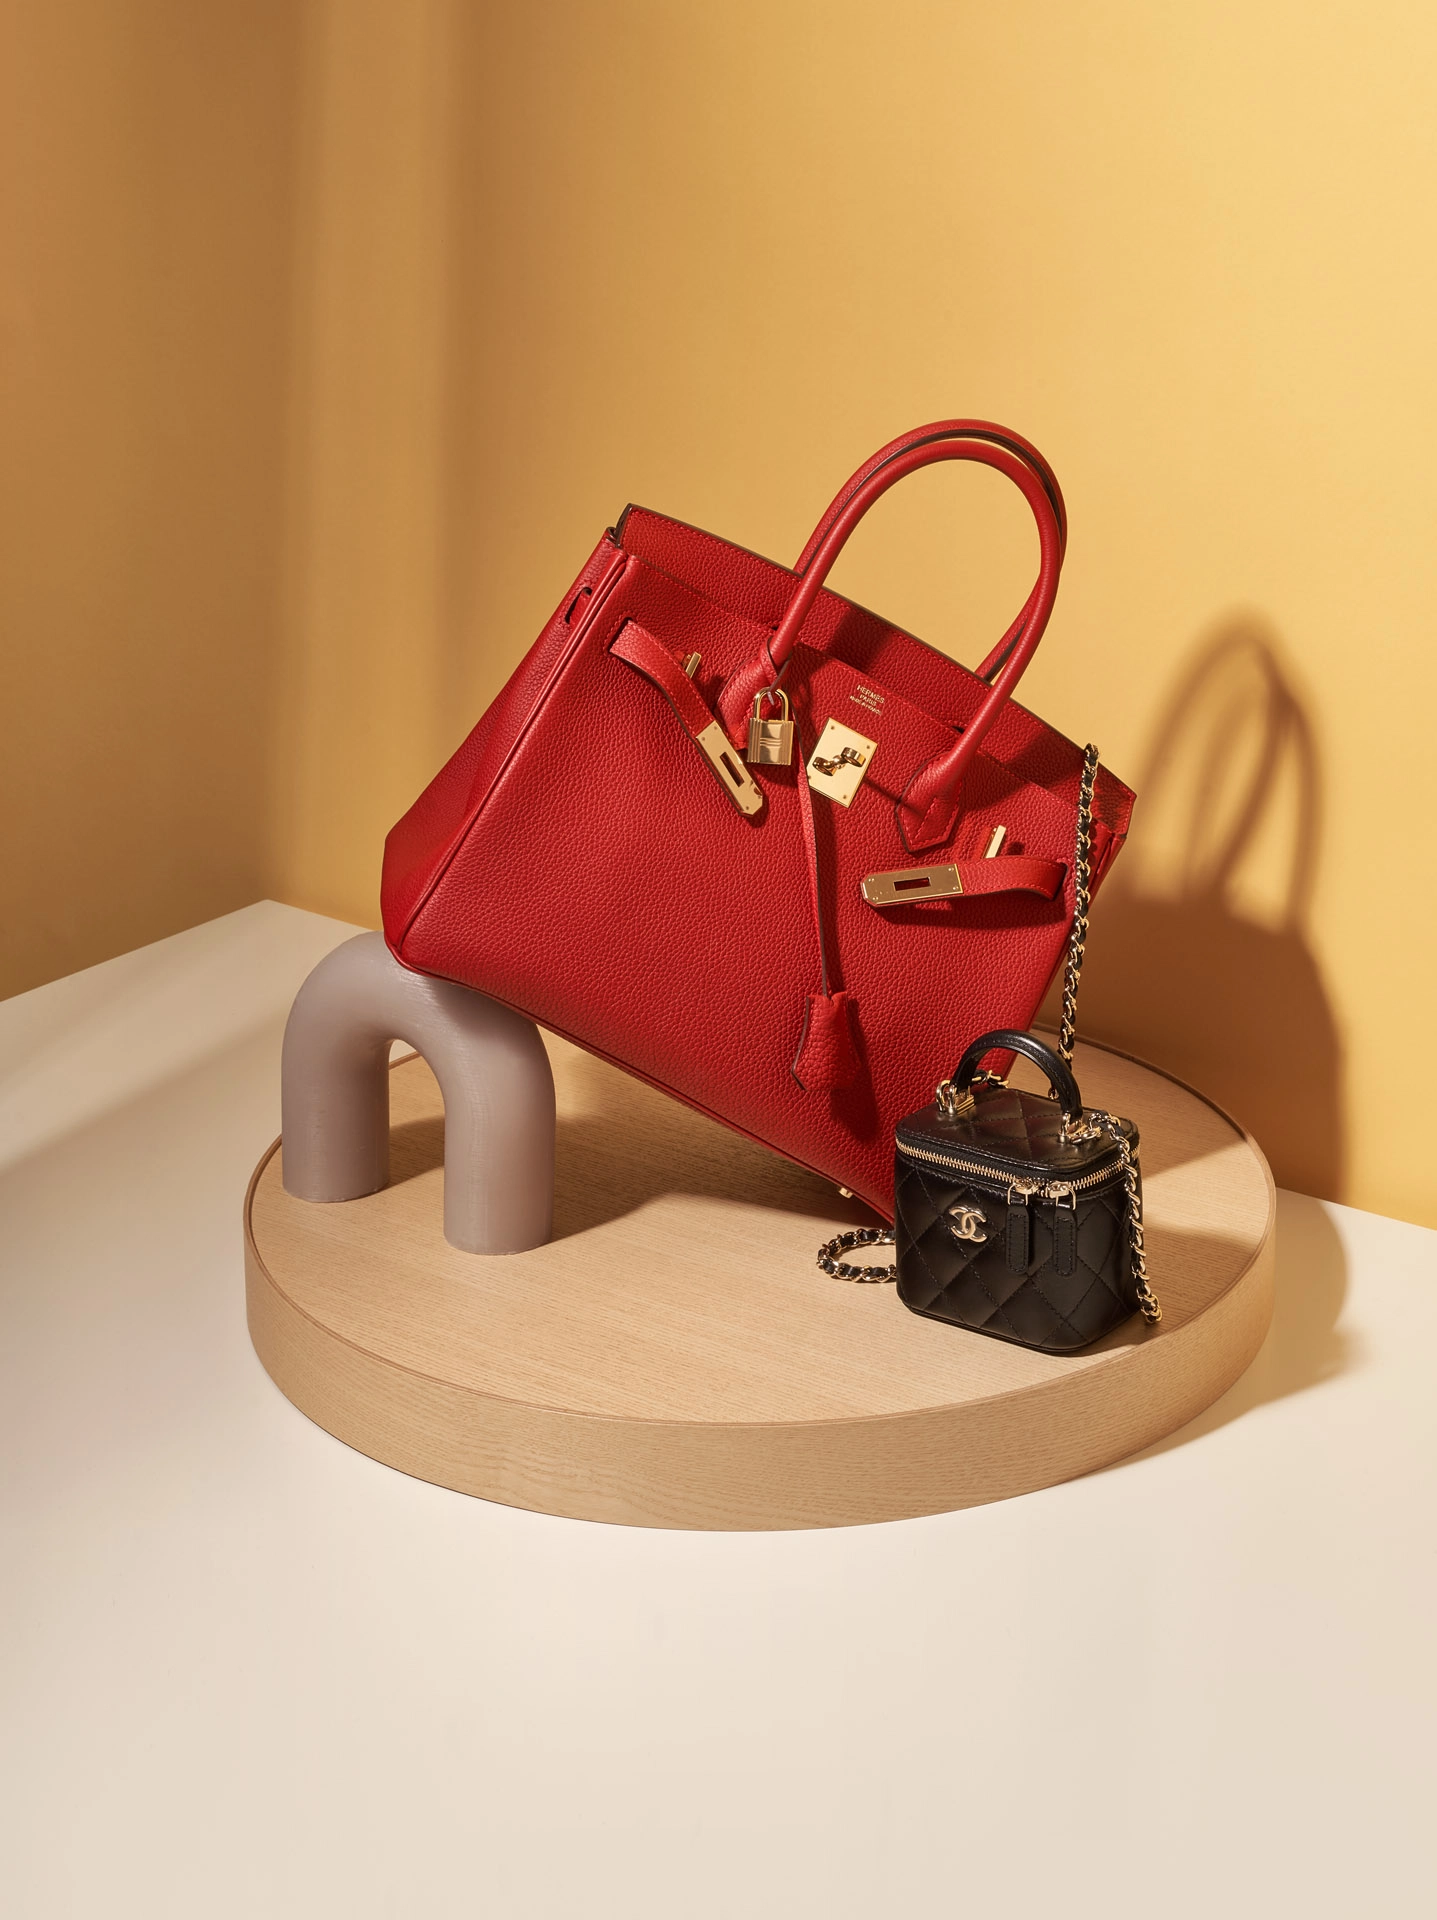 Diese zeitlose Tasche von Louis Vuitton bekommt sechs kunstvolle